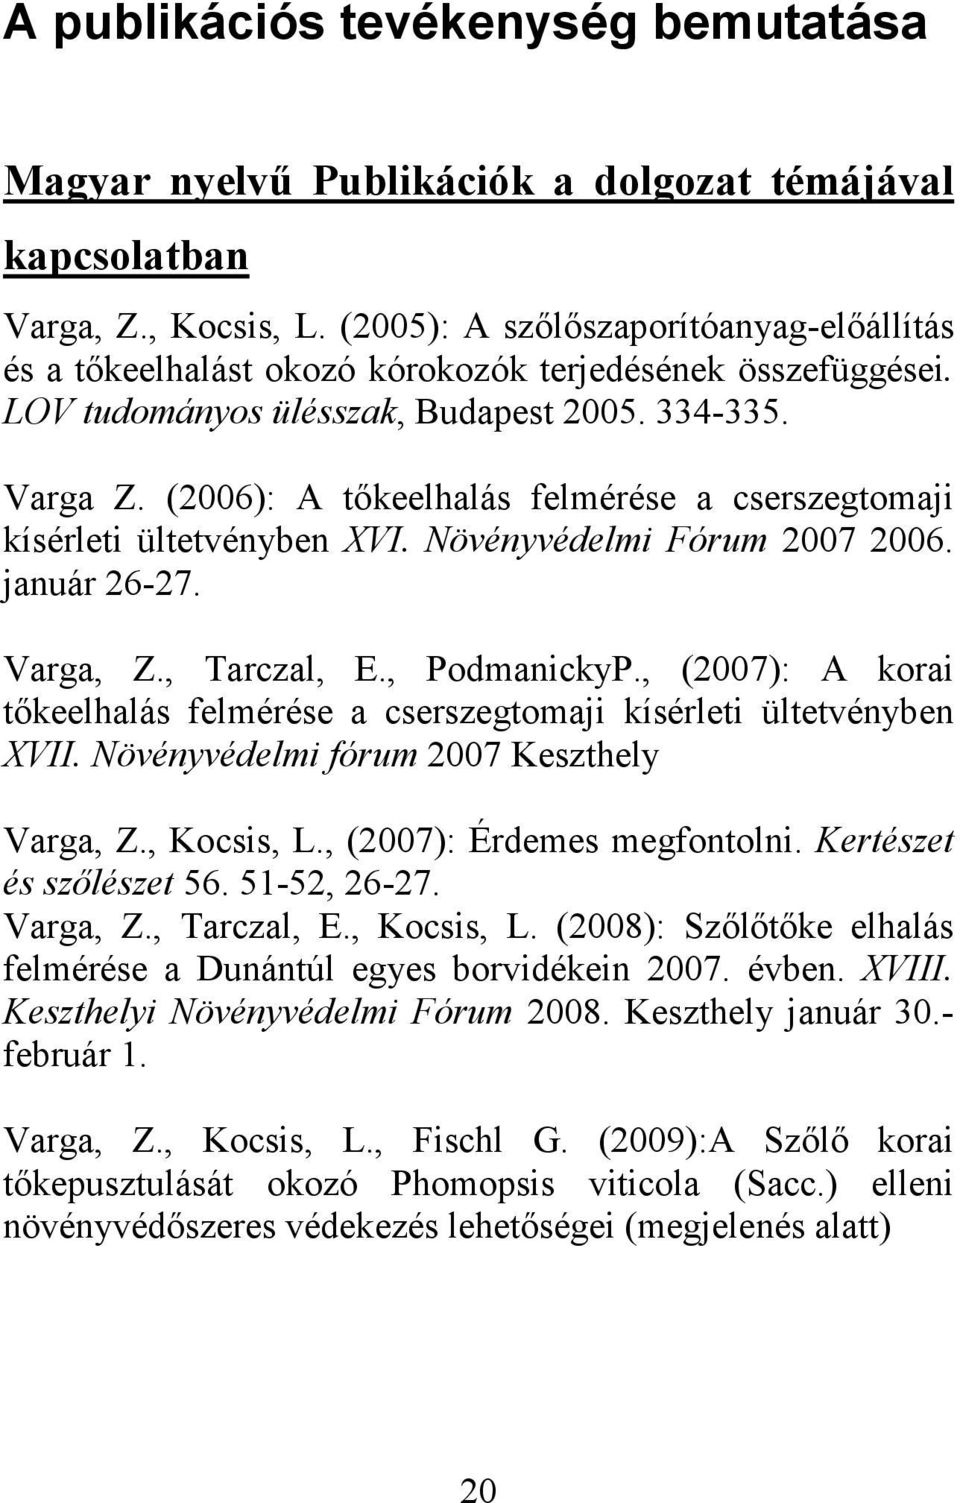 (2006): A tőkeelhalás felmérése a cserszegtomaji kísérleti ültetvényben XVI. Növényvédelmi Fórum 2007 2006. január 26-27. Varga, Z., Tarczal, E., PodmanickyP.